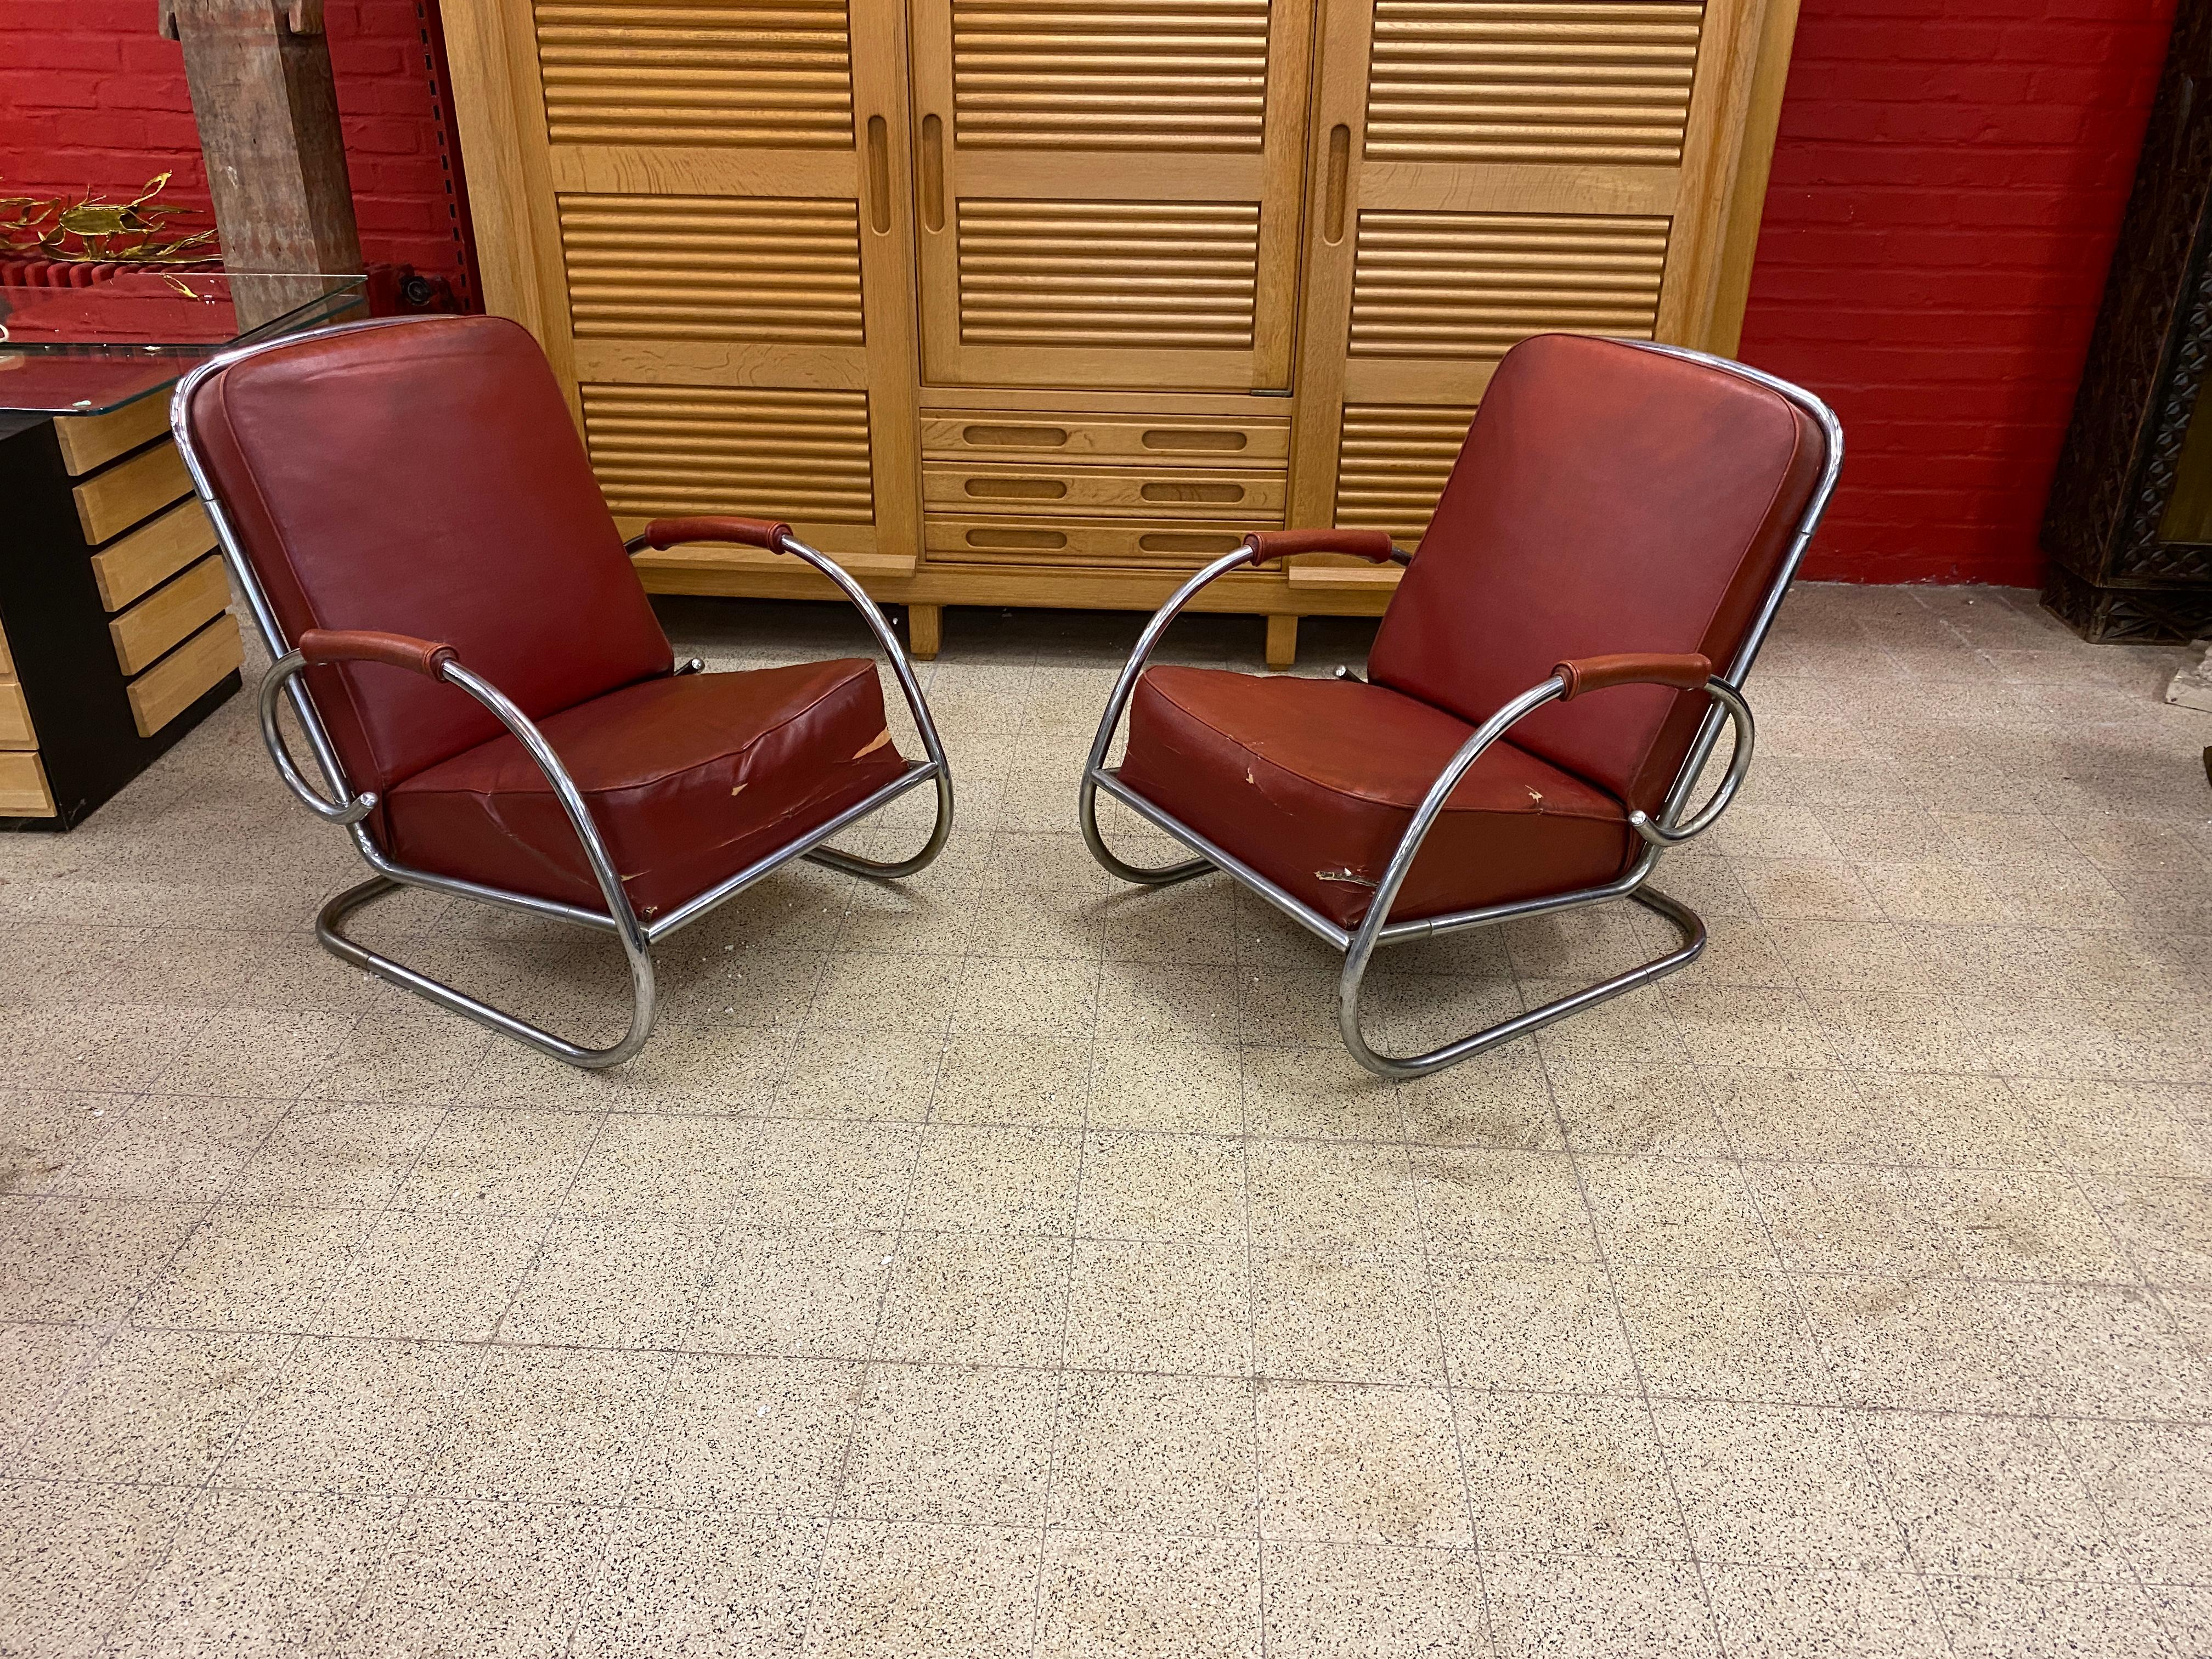 2 fauteuils Art Déco modernistes en métal chromé et faux cuir, vers 1920-1930.
métal en bon état
revêtement à refaire.
